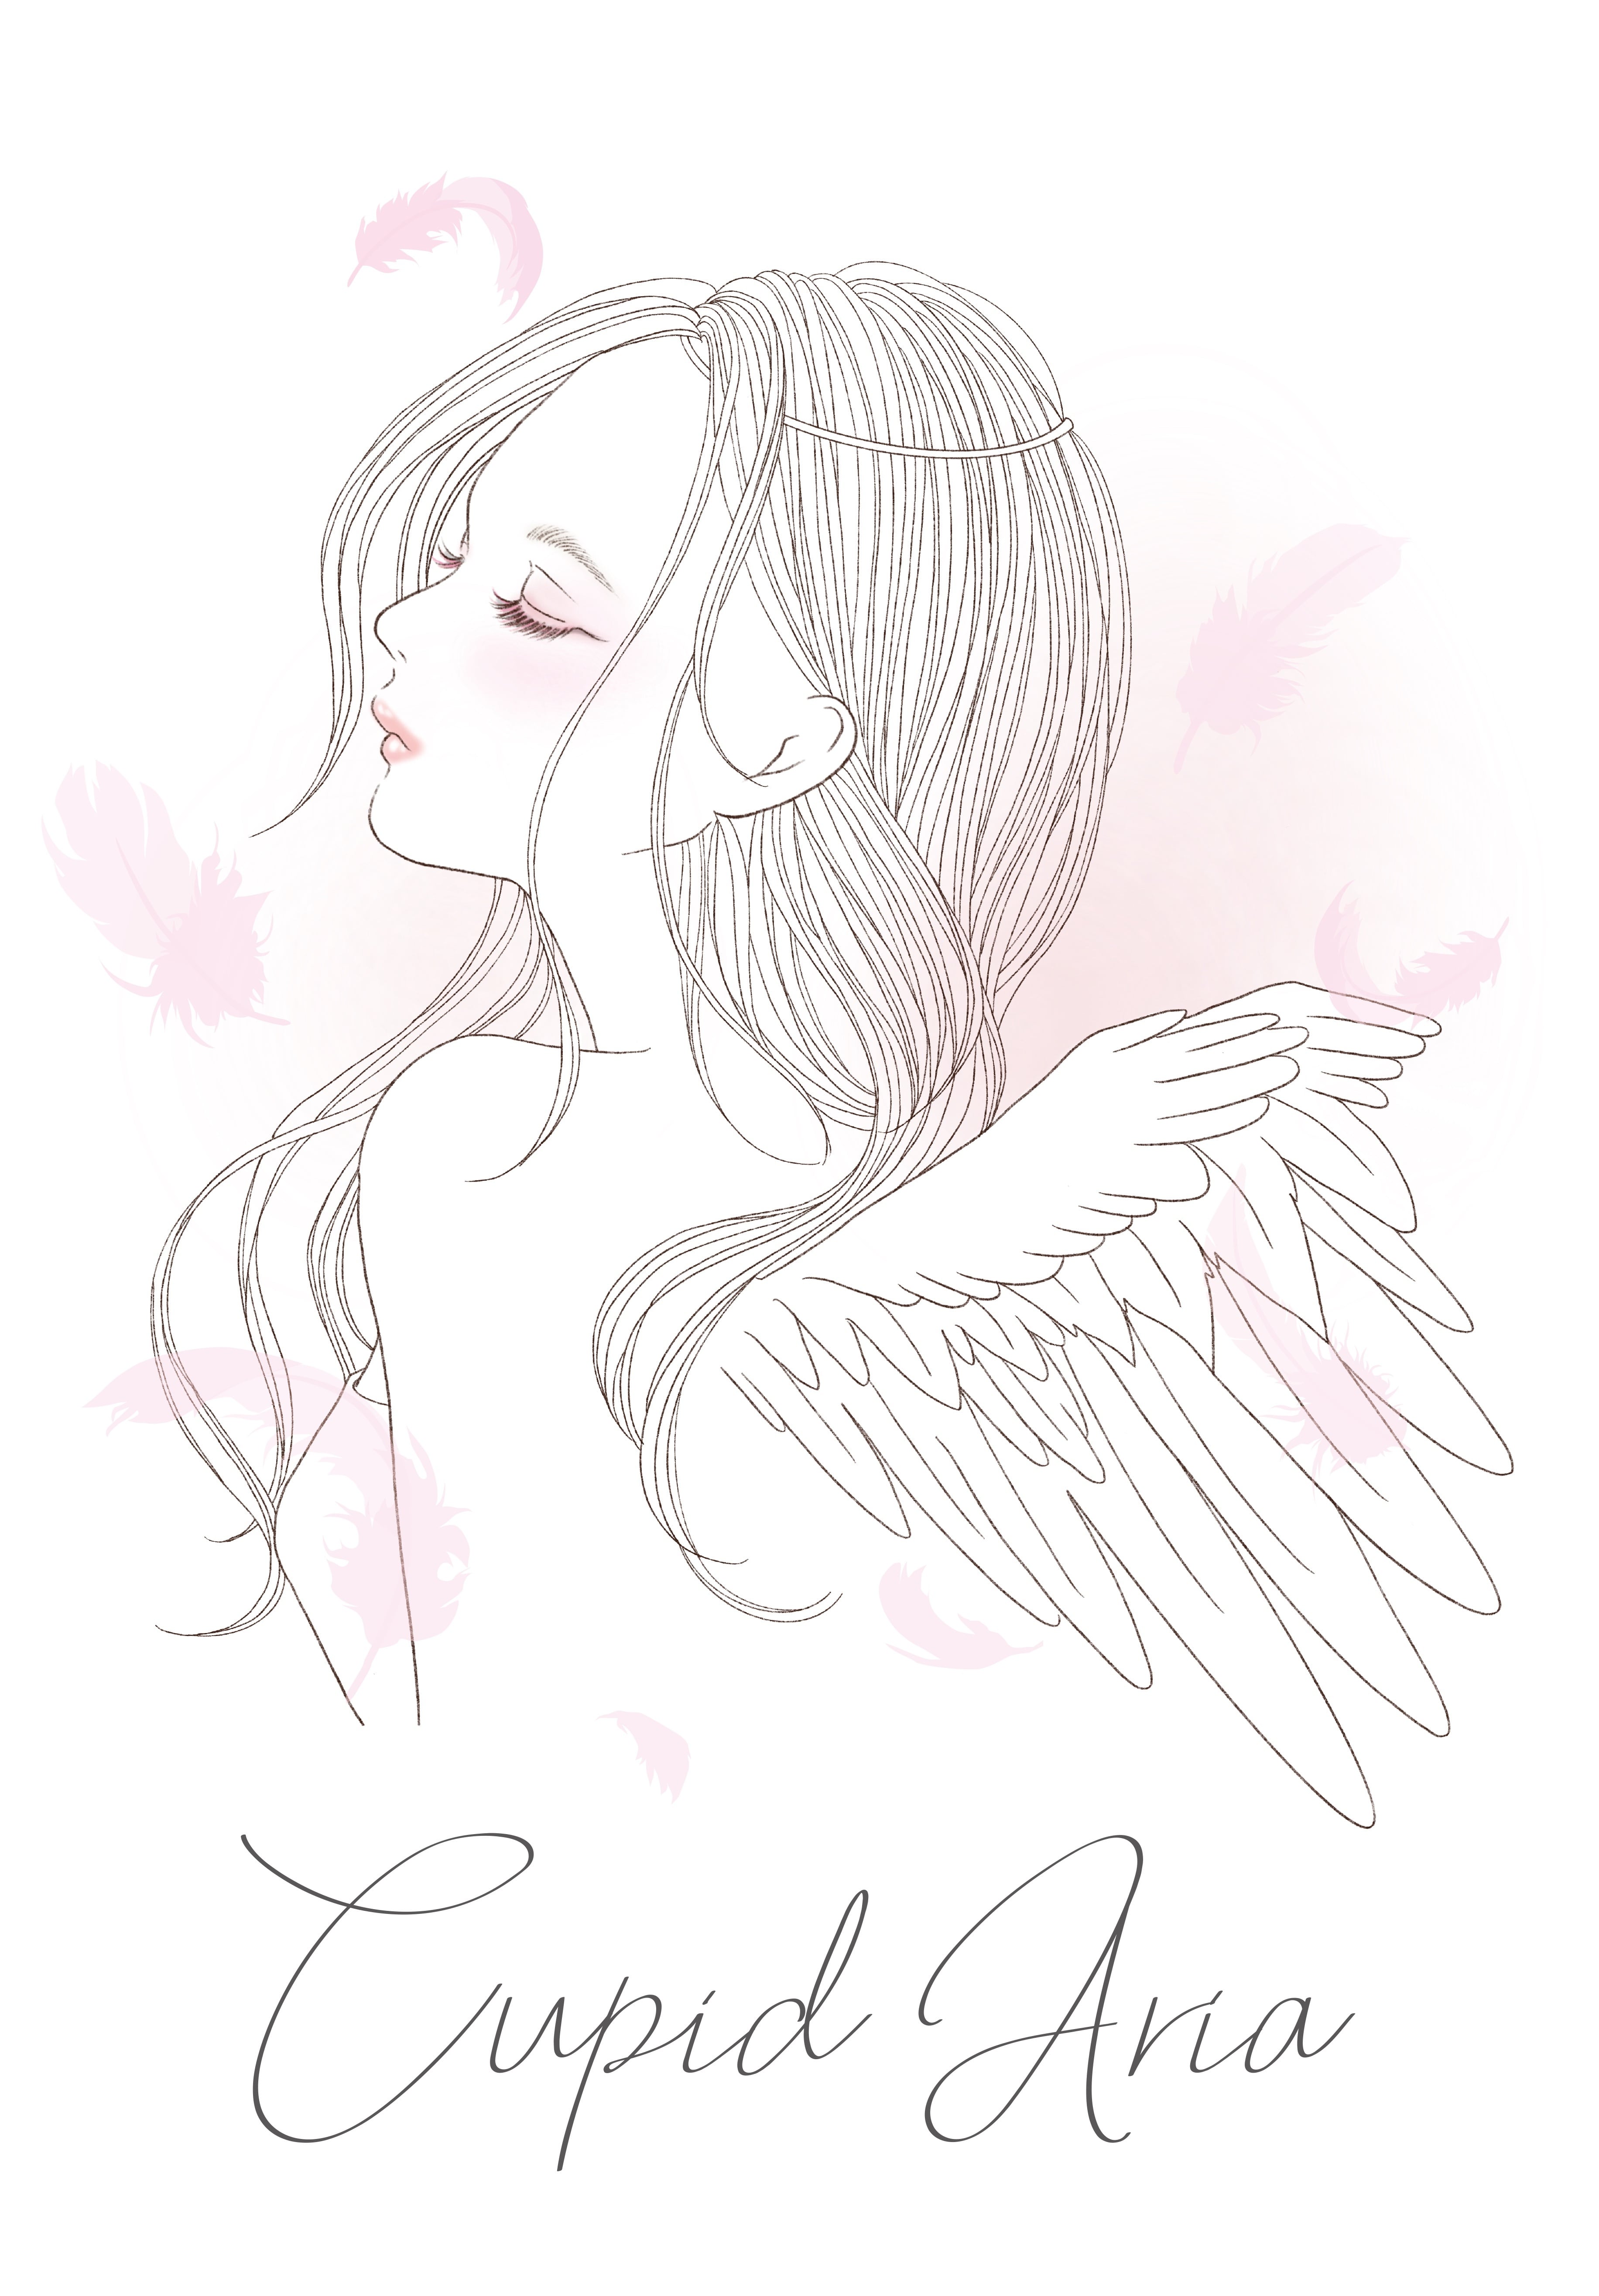 Cupid Aria